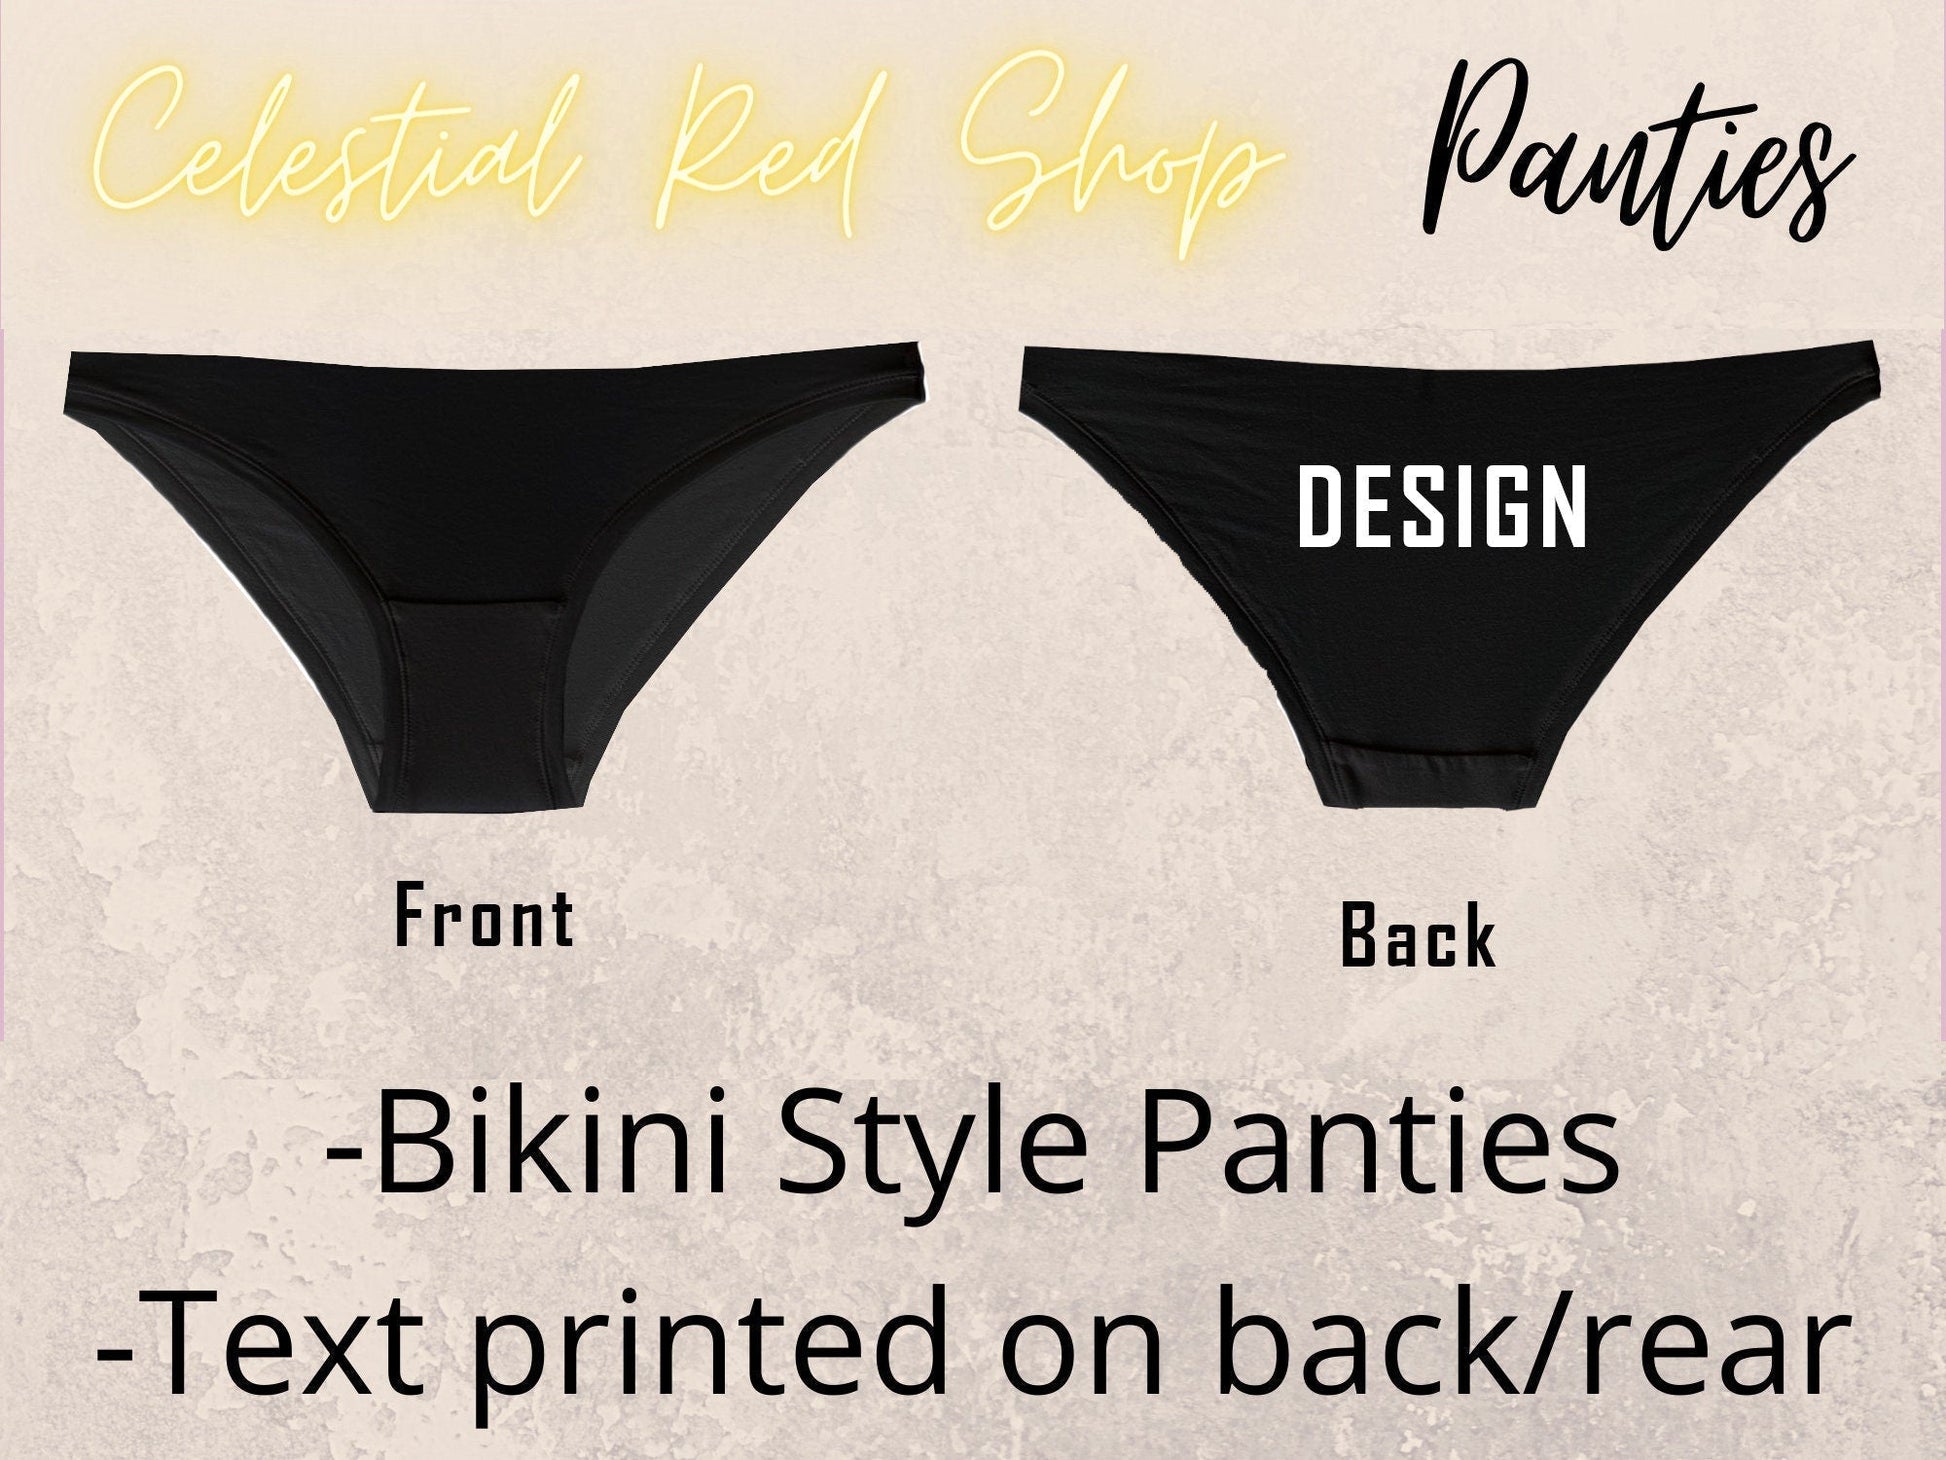 Celestial Red Shop - Bikini Style Panties